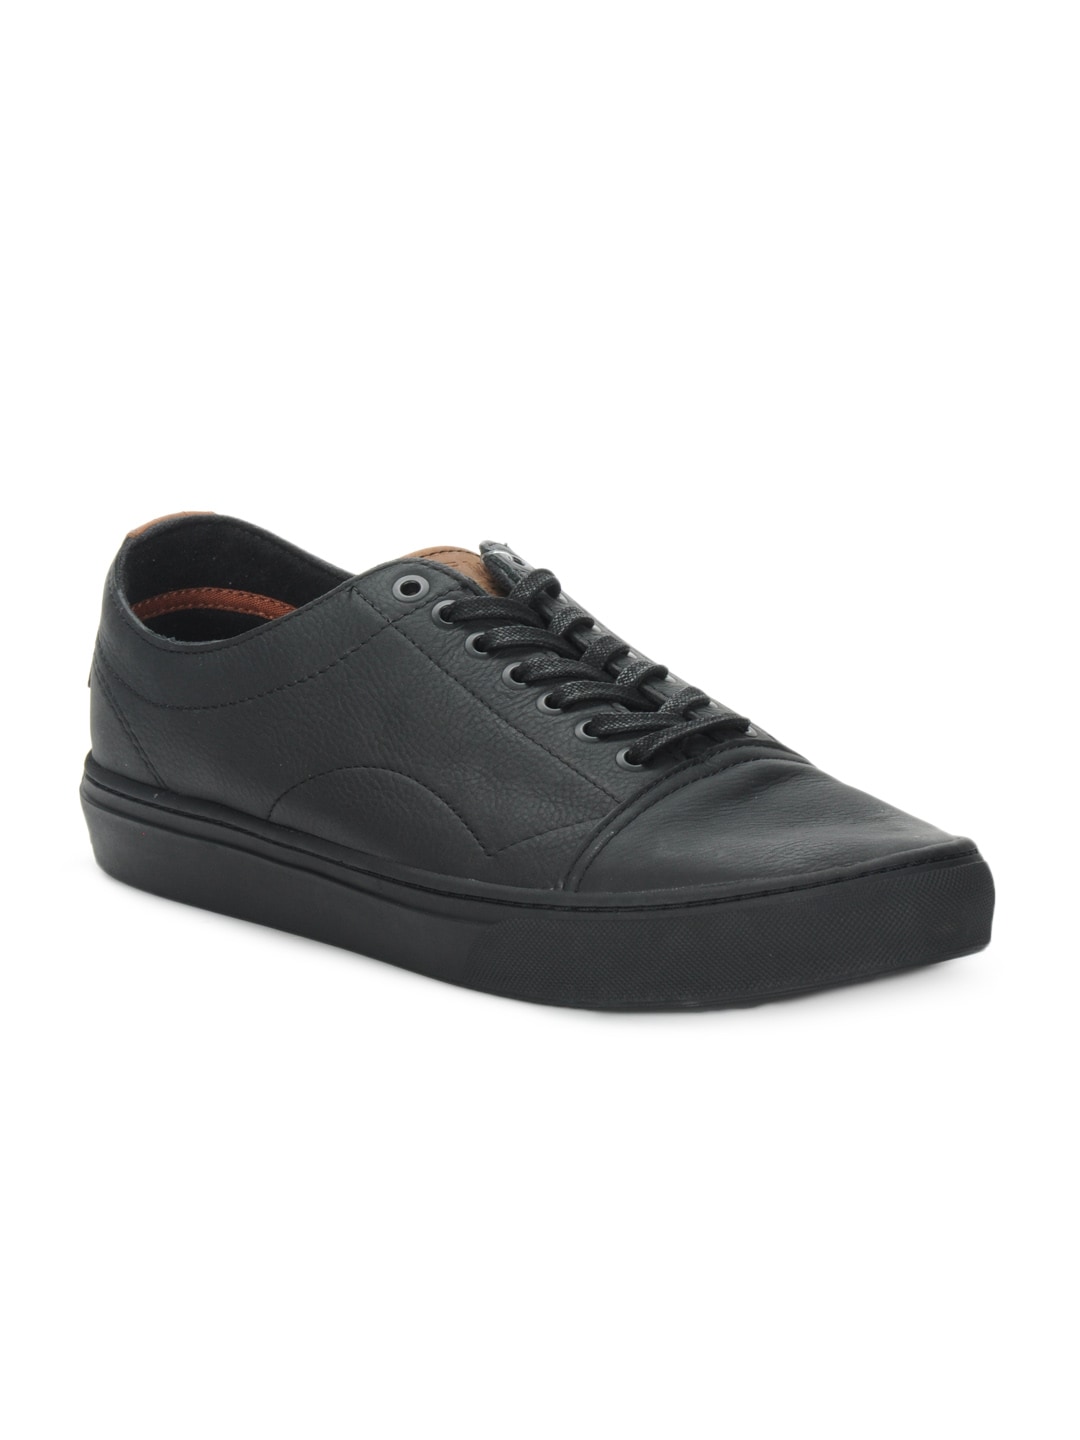 Vans Men Black Casual Shoes